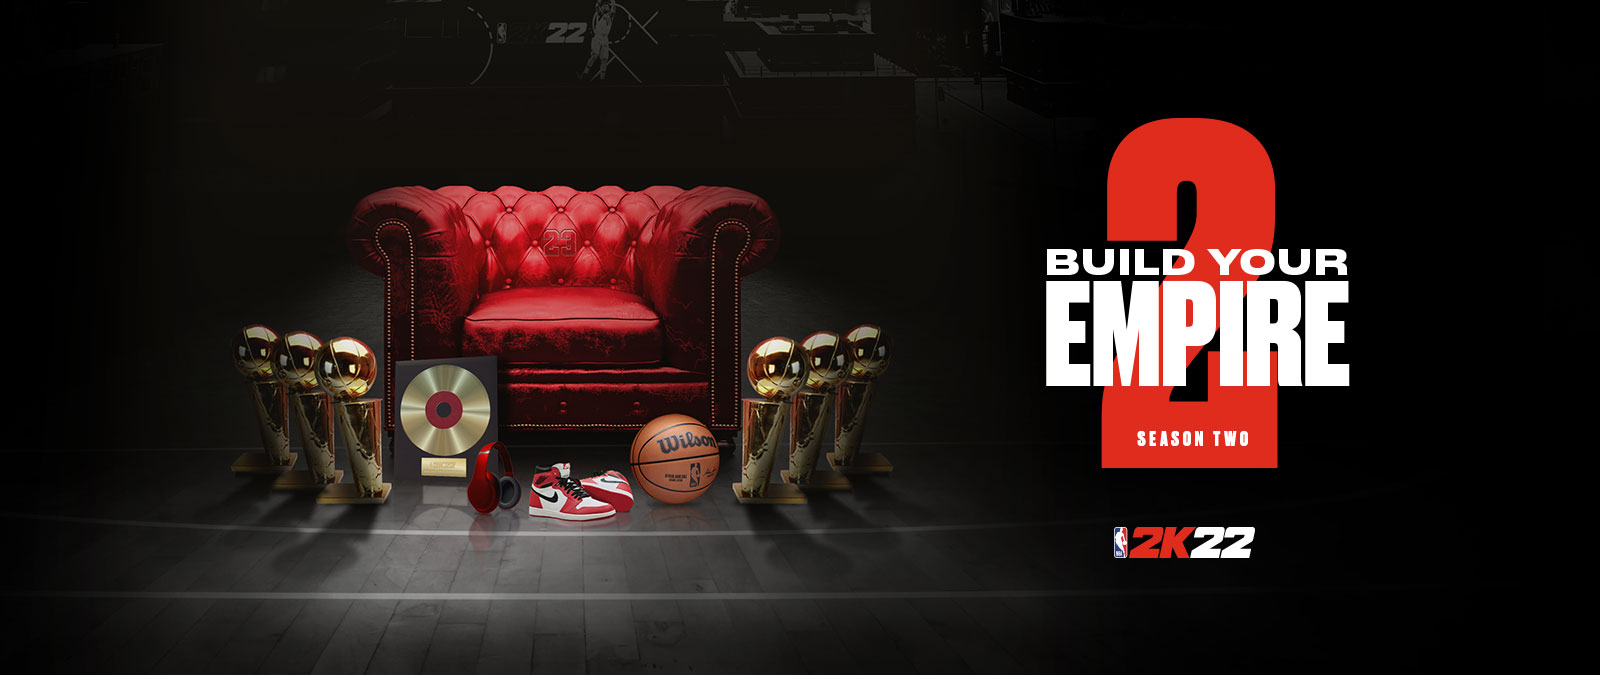 Crea tu imperio en la temporada 2 de NBA 2k22: varios trofeos alrededor de una silla de cuero rojo.